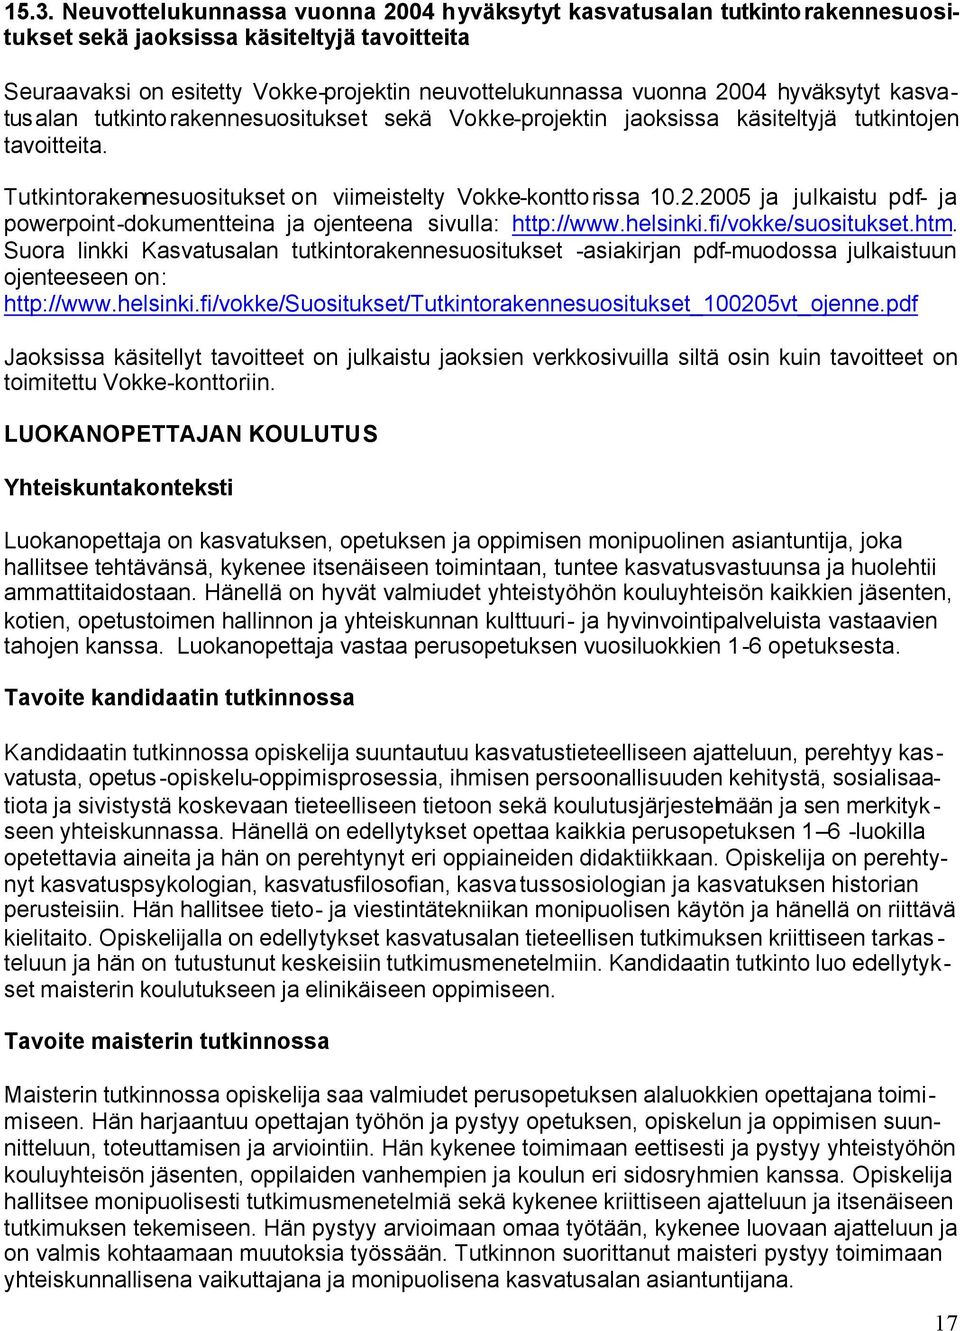 2005 ja julkaistu pdf- ja powerpoint-dokumentteina ja ojenteena sivulla: http://www.helsinki.fi/vokke/suositukset.htm.